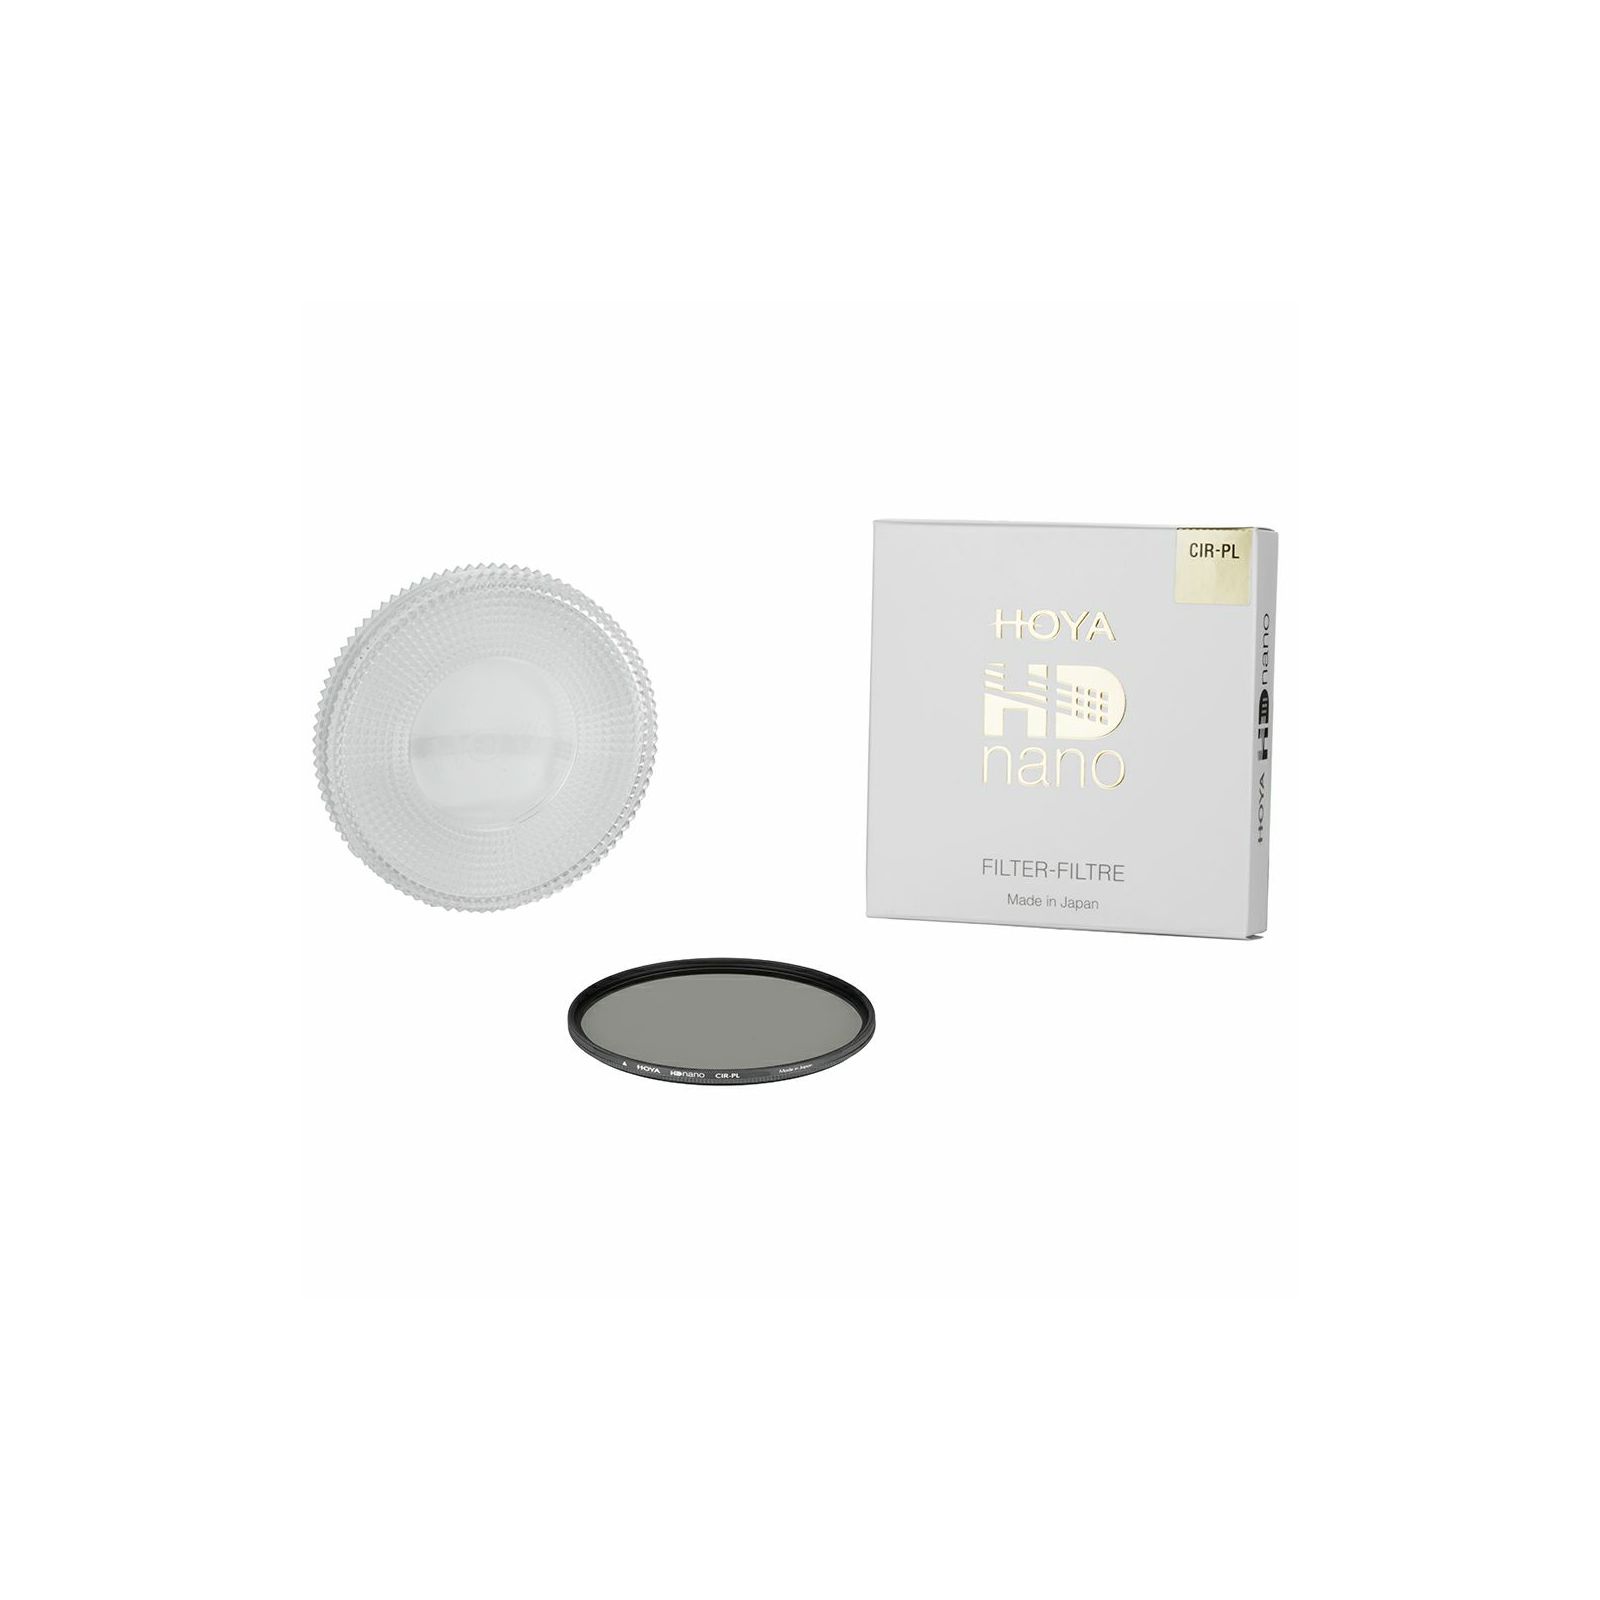 Hoya HD Nano CIR-PL Cirkularni polarizacijski filter 55mm CPL